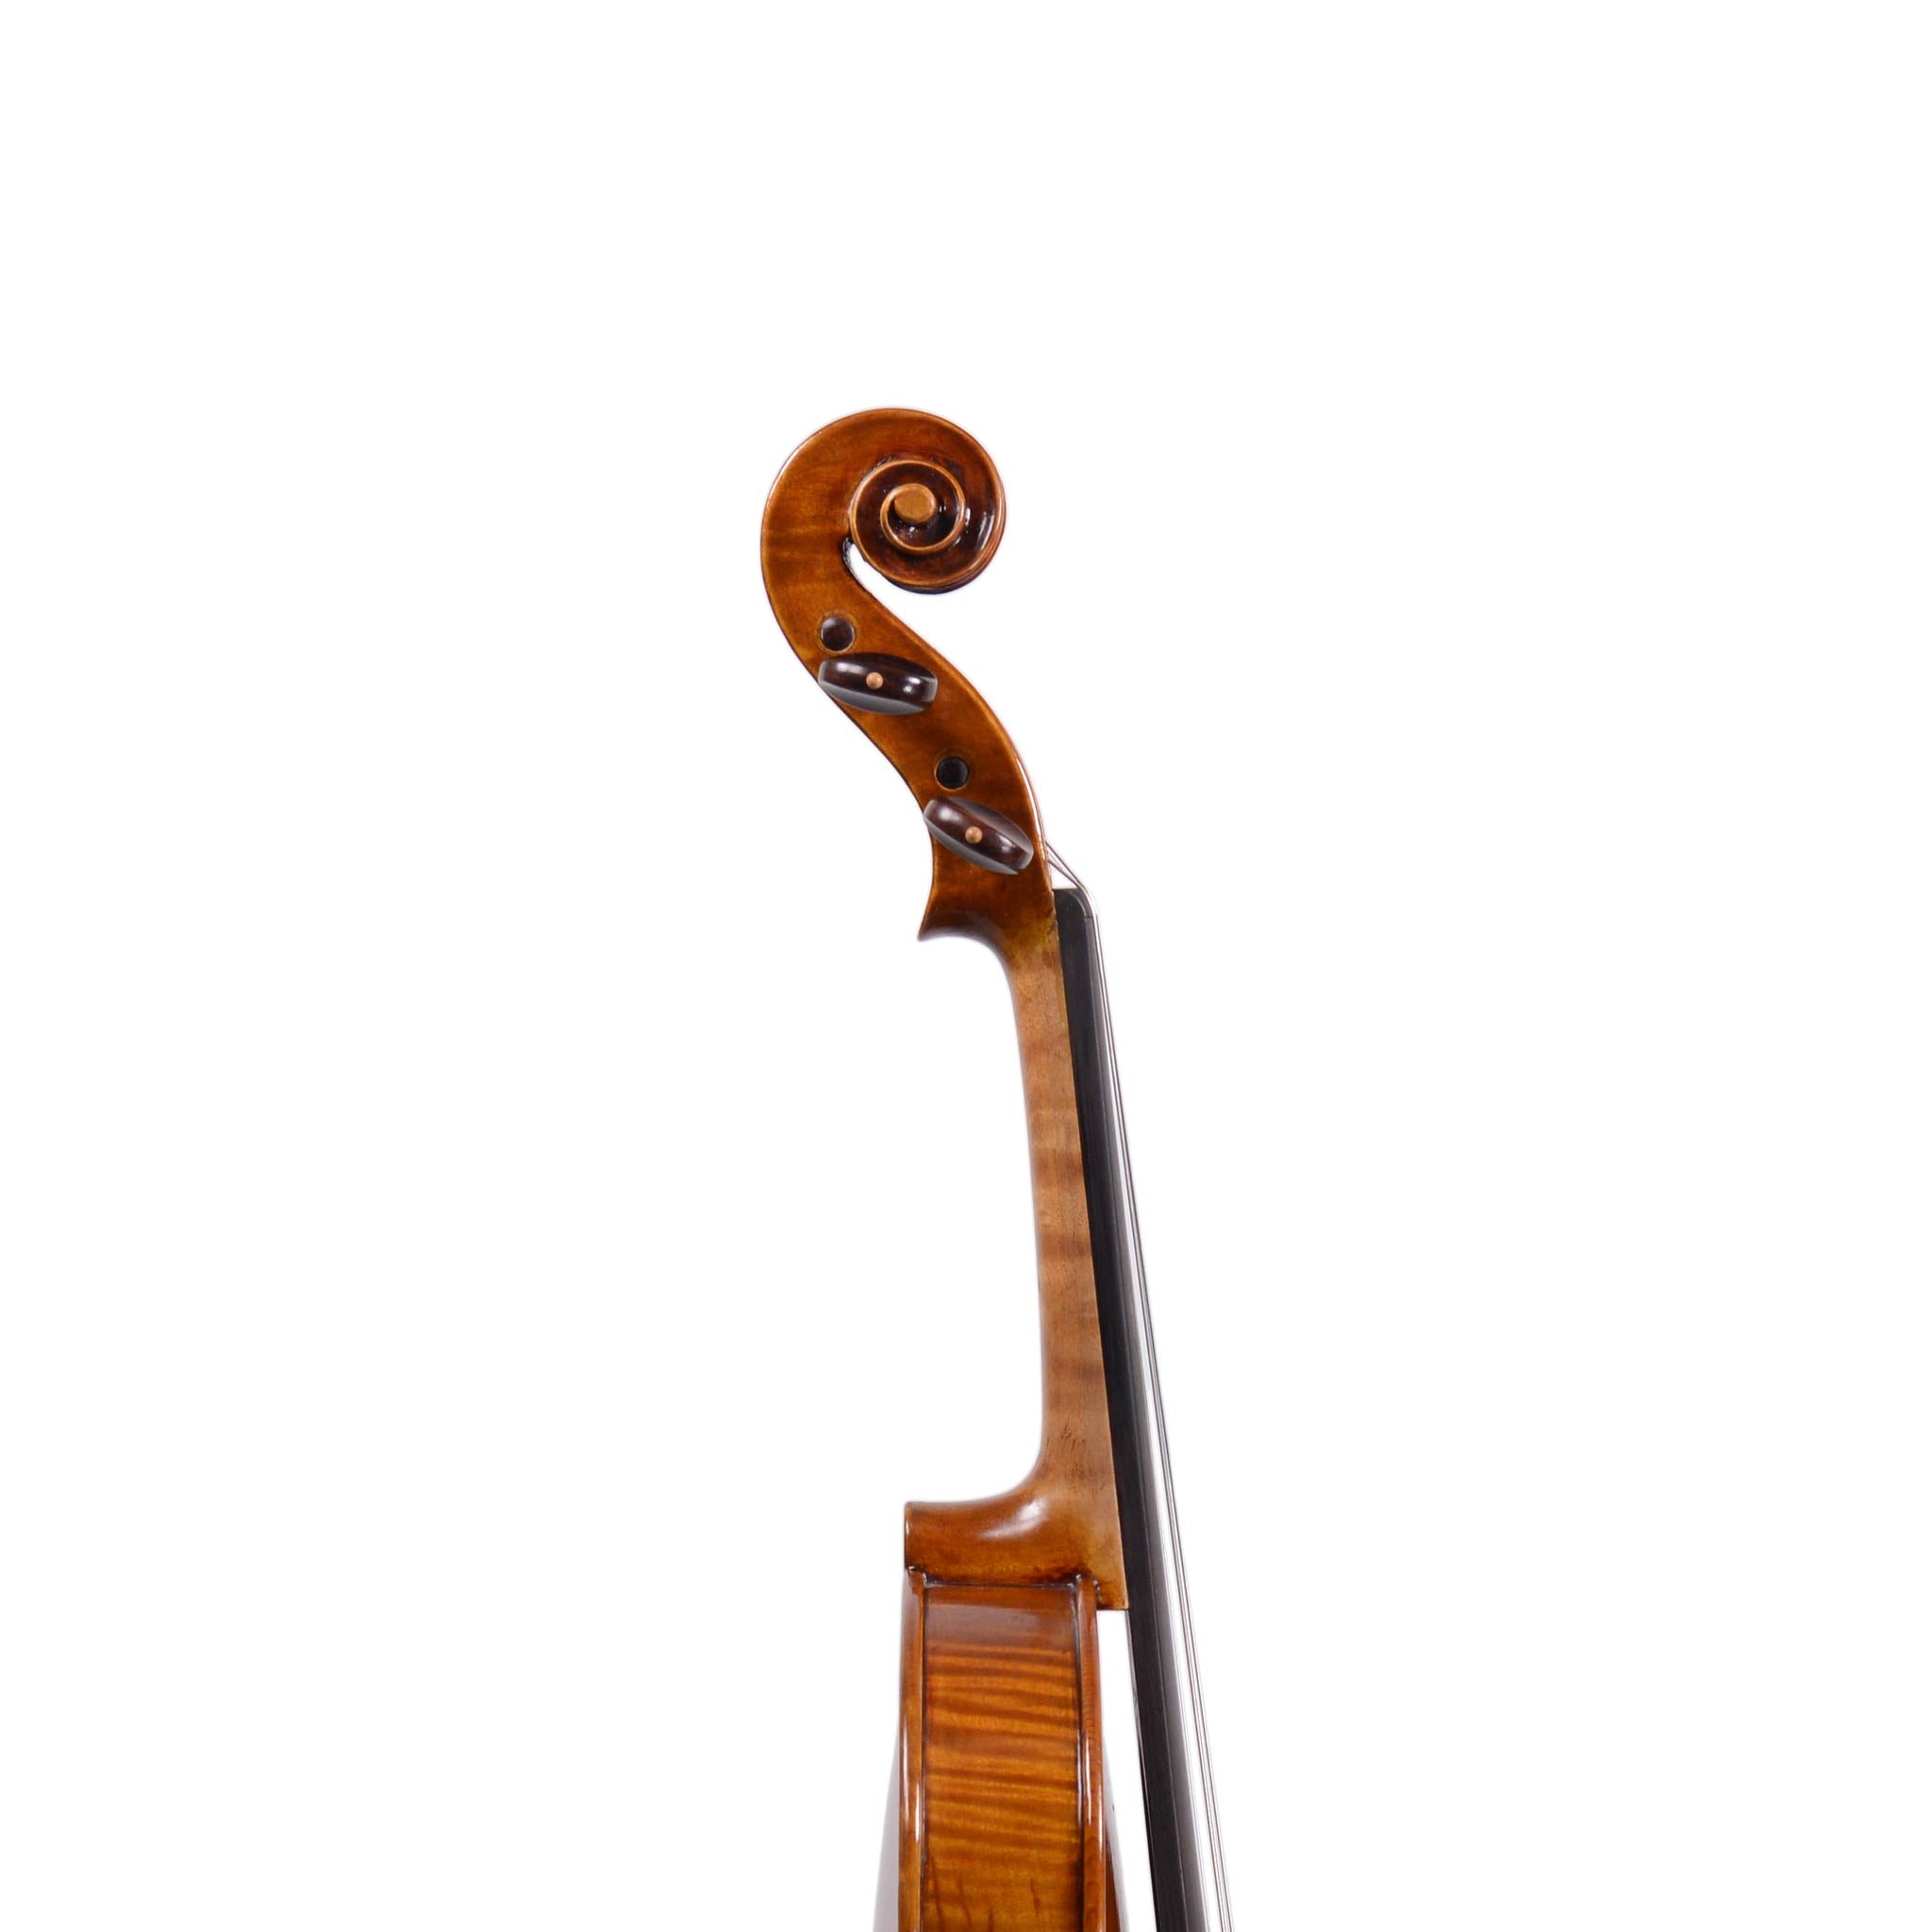 Deli Sacilotto Violin 1998, Florida, USA (FS213)